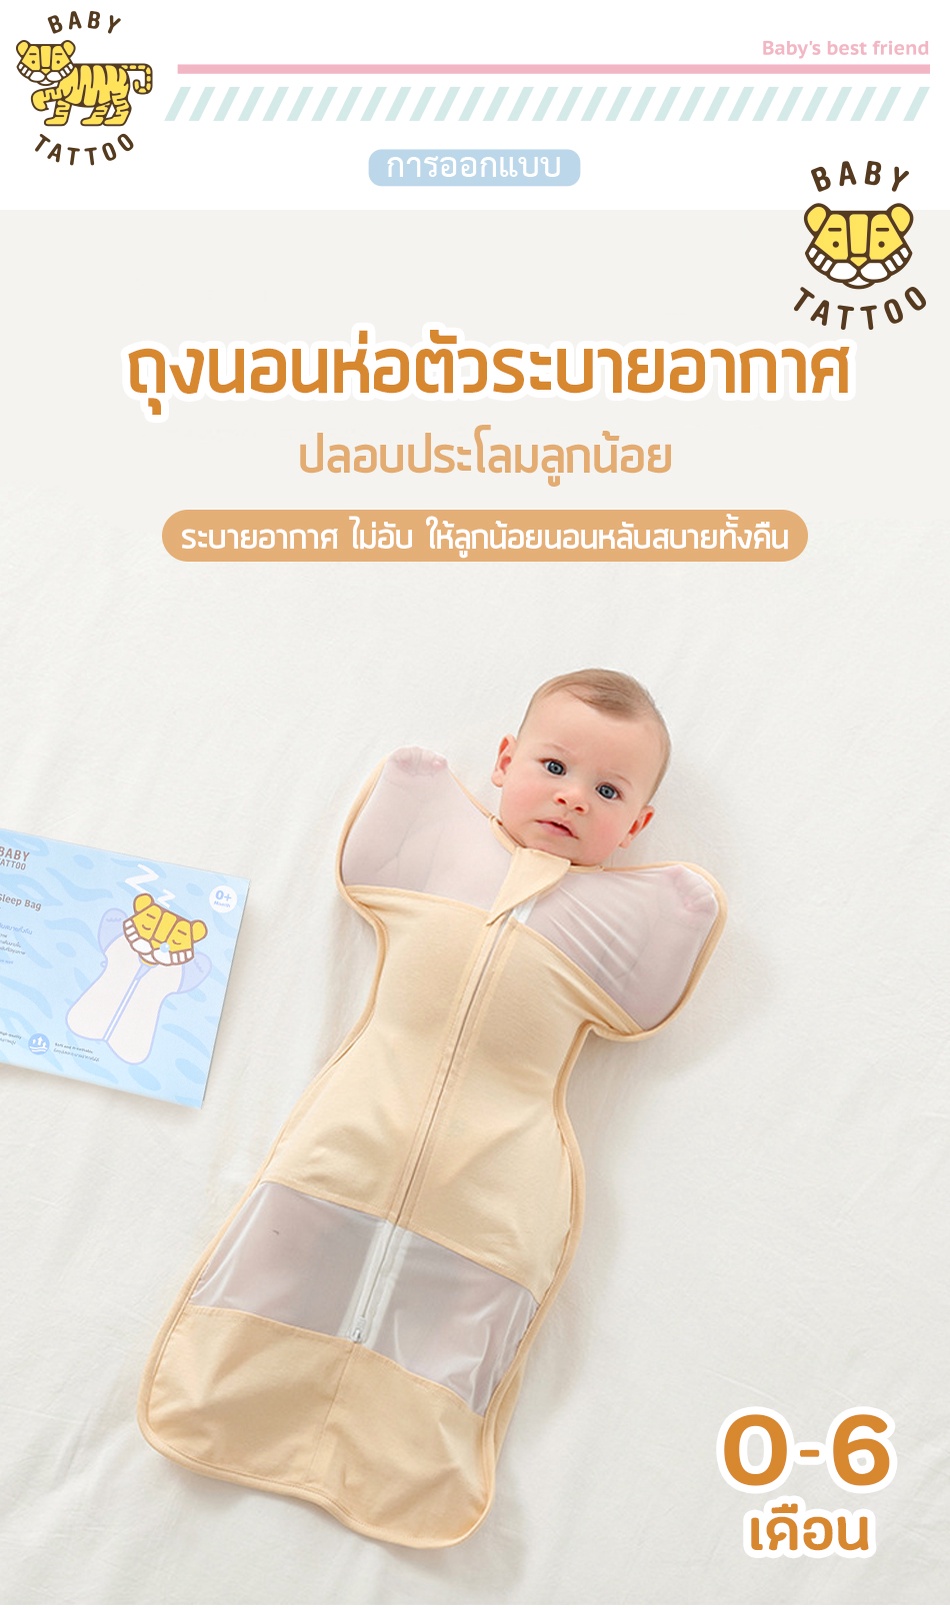 ภาพประกอบคำอธิบาย ถุงนอนเด็กแบบตาข่าย ผ้าห่อตัวทารก สำเร็จรูป แบบซิปรูด ระบายอากาศดี ถุงนอนสำหรับเด็กทารก 0-6 เดือน BABY TATTOO